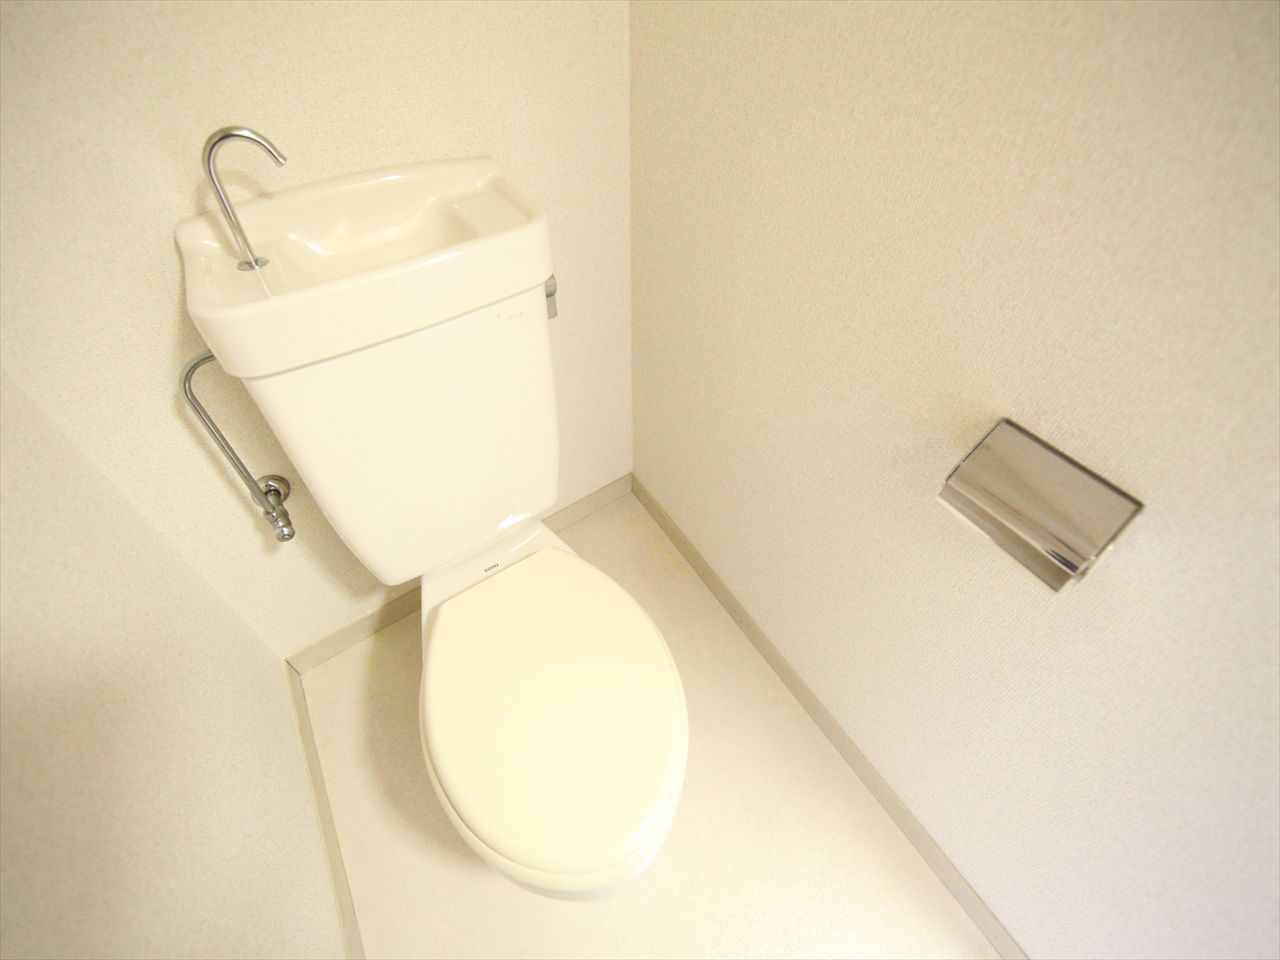 Toilet. Toilet (by bus toilet)